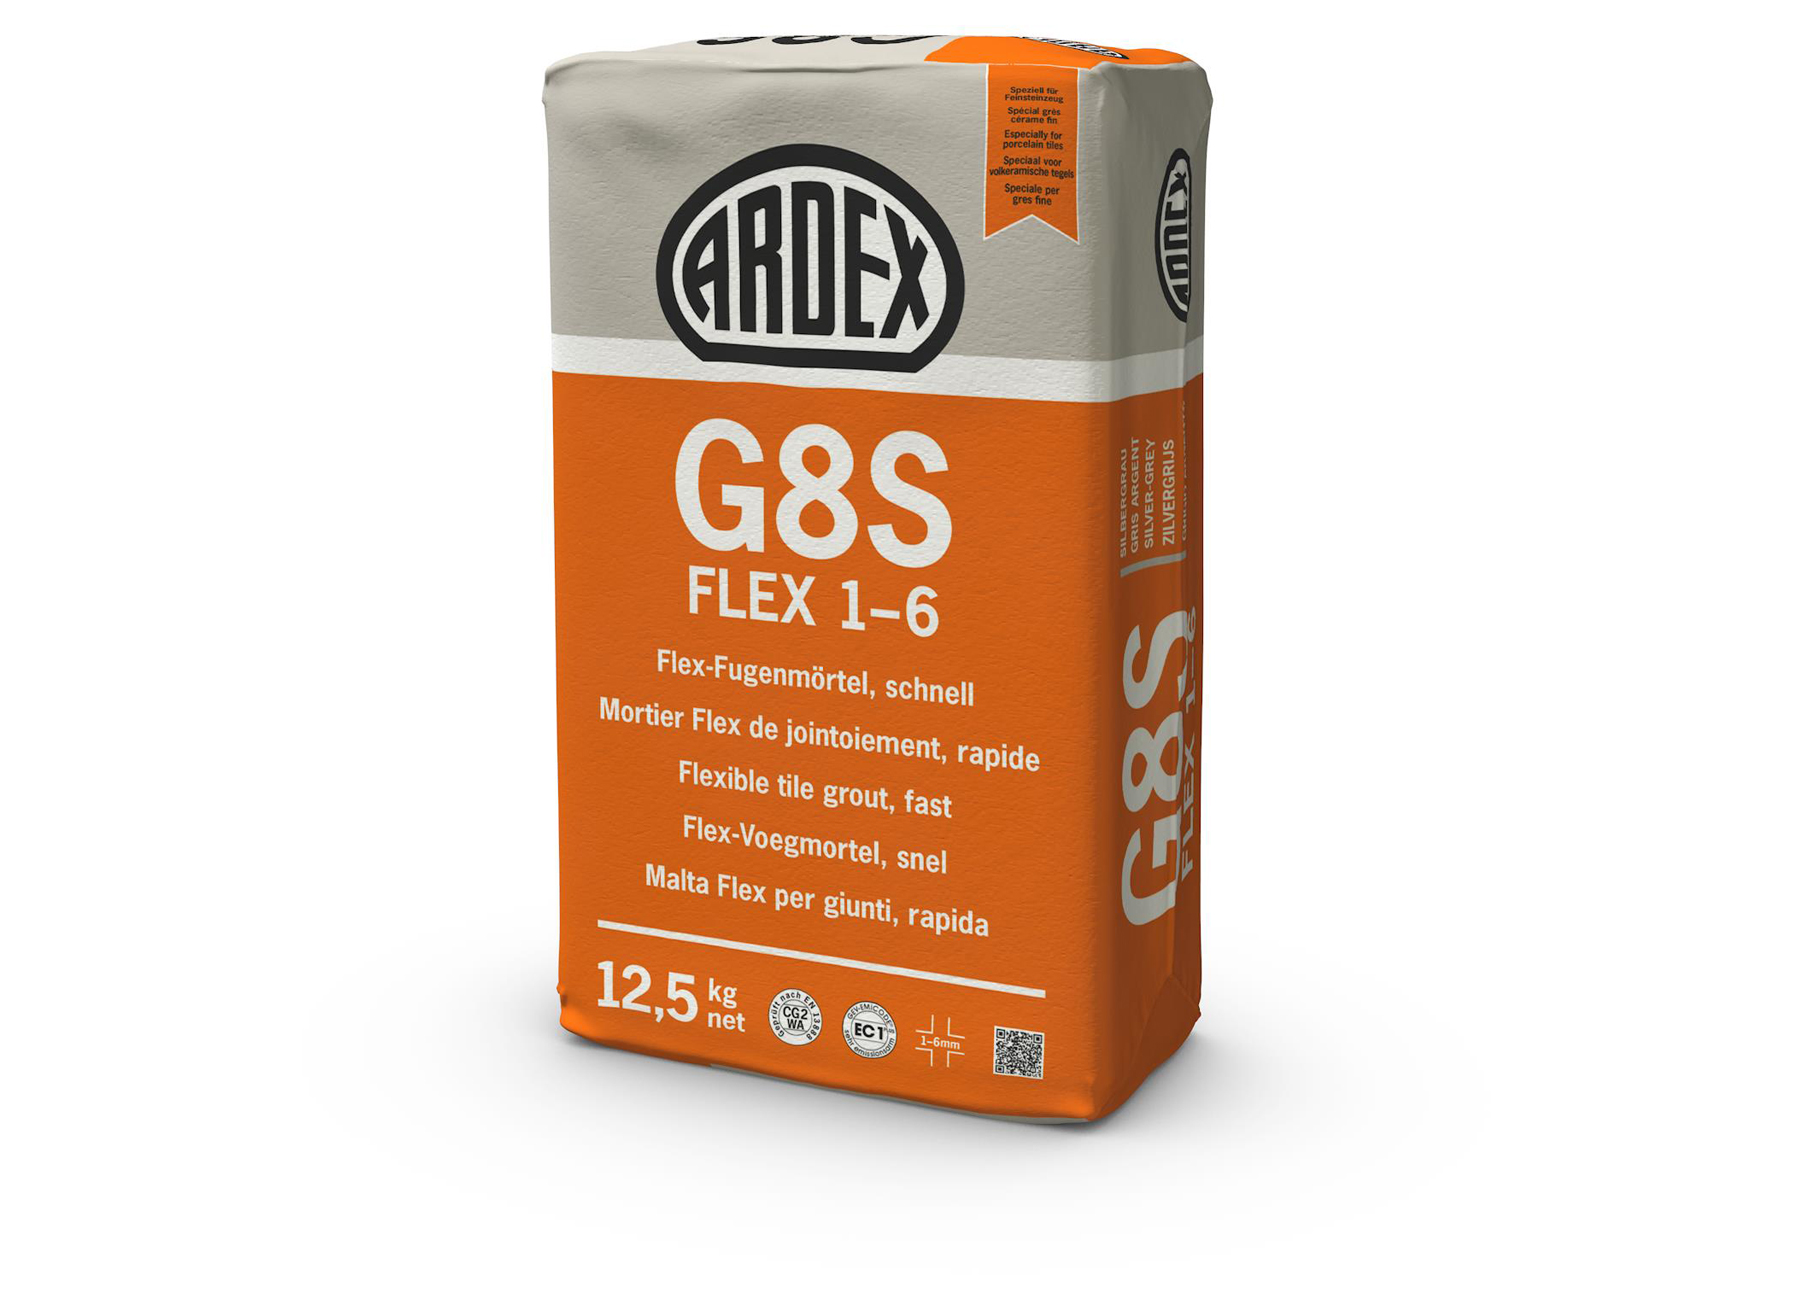 G8S FLEX 1-6 ANTRACIET 5KG